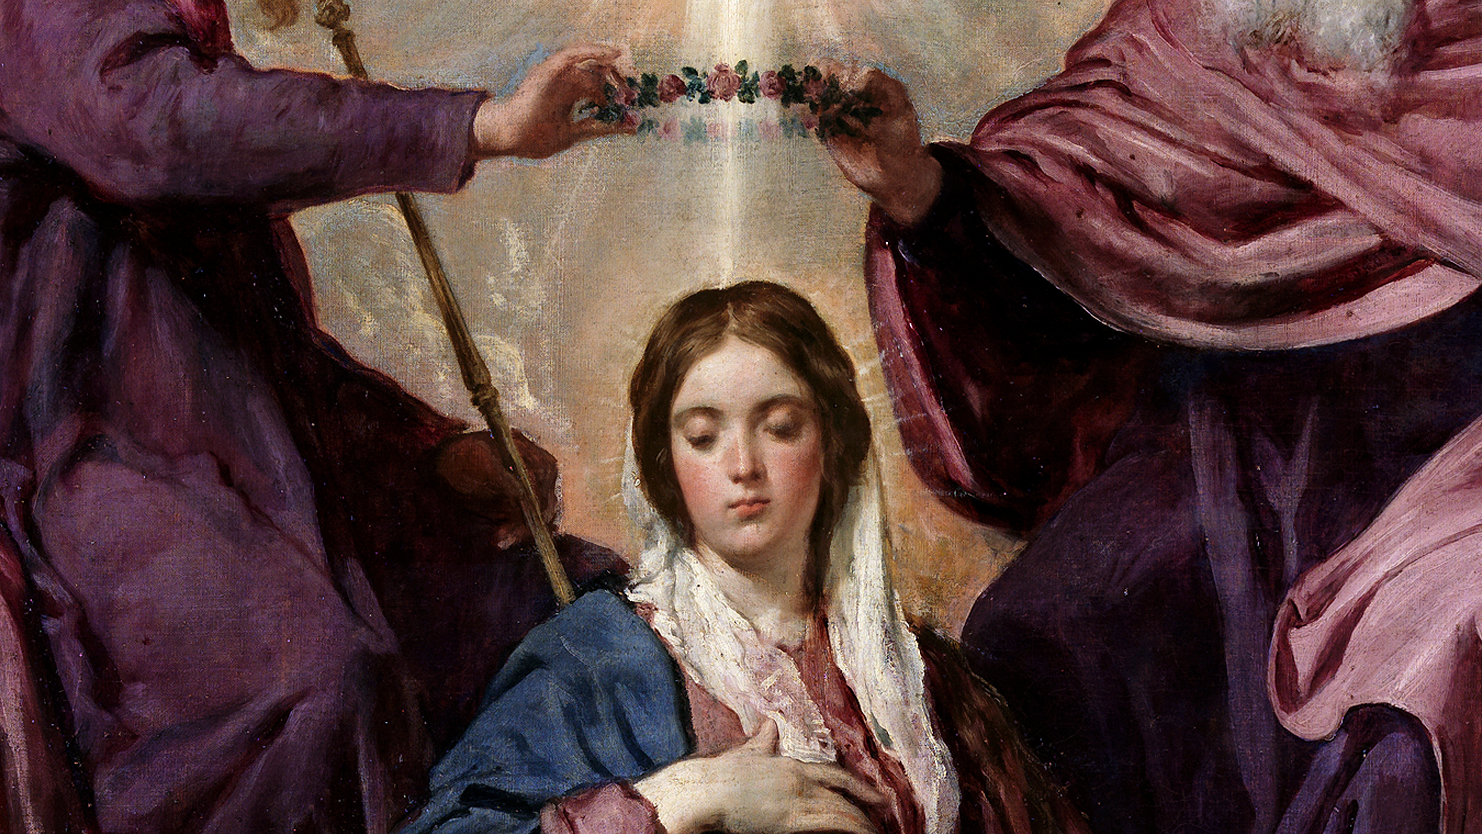 Coronation of Mary